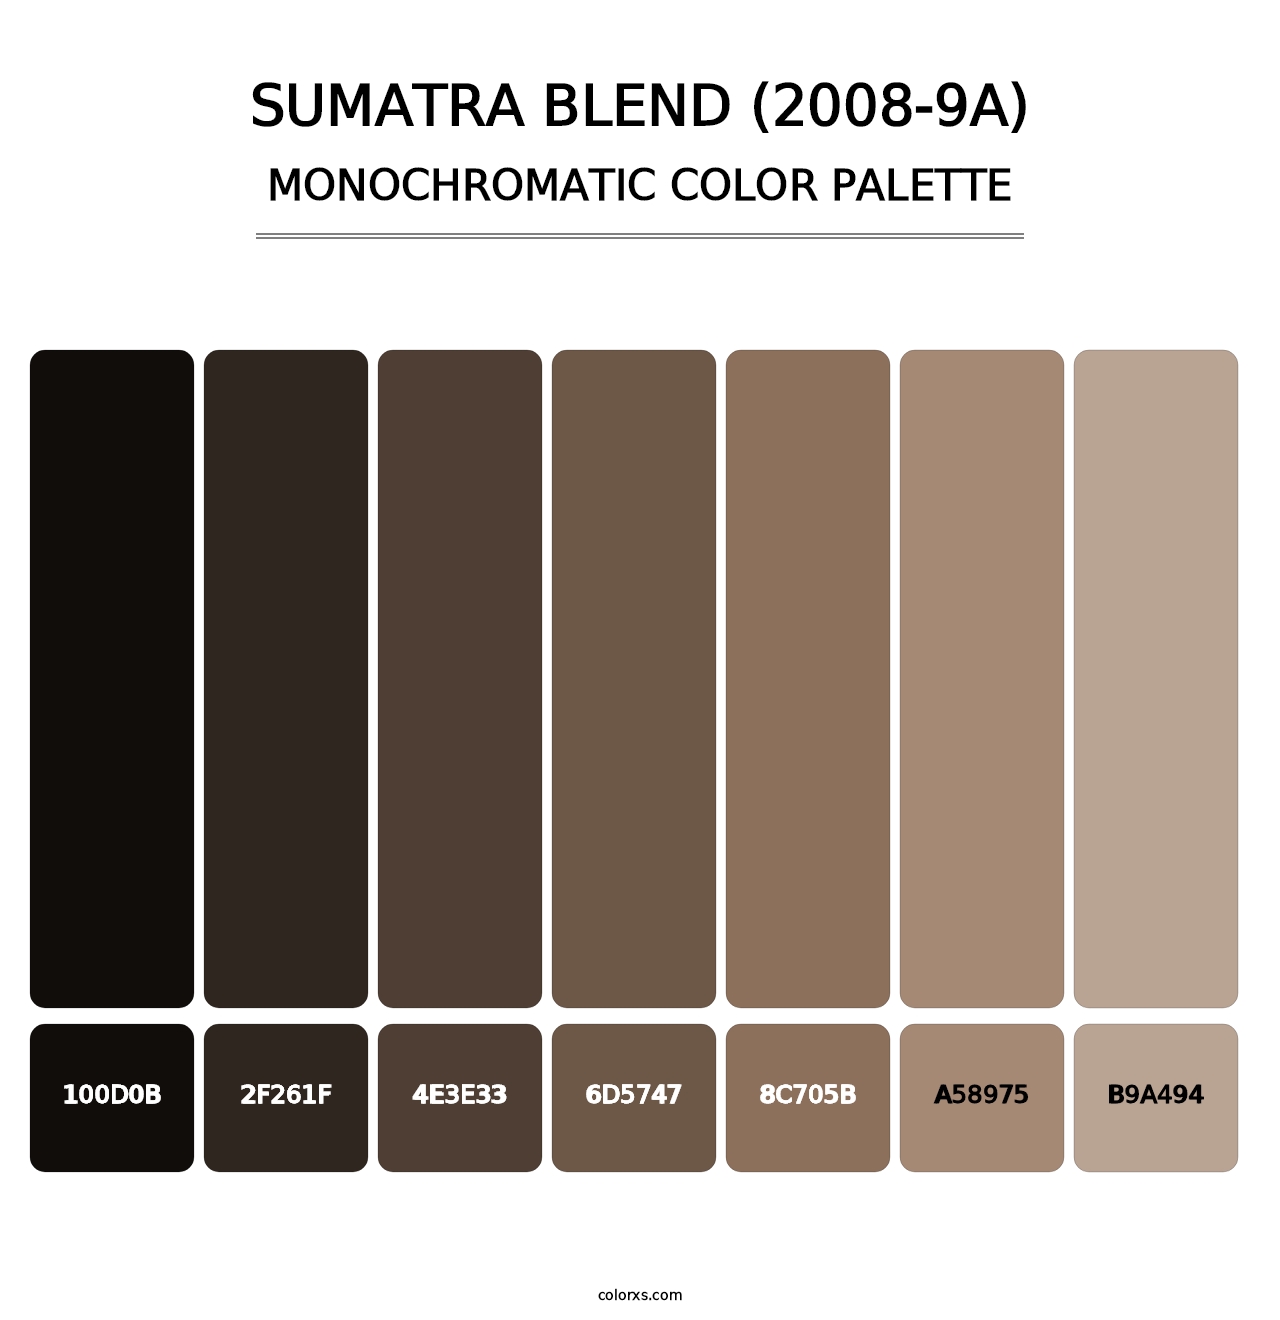 Sumatra Blend (2008-9A) - Monochromatic Color Palette